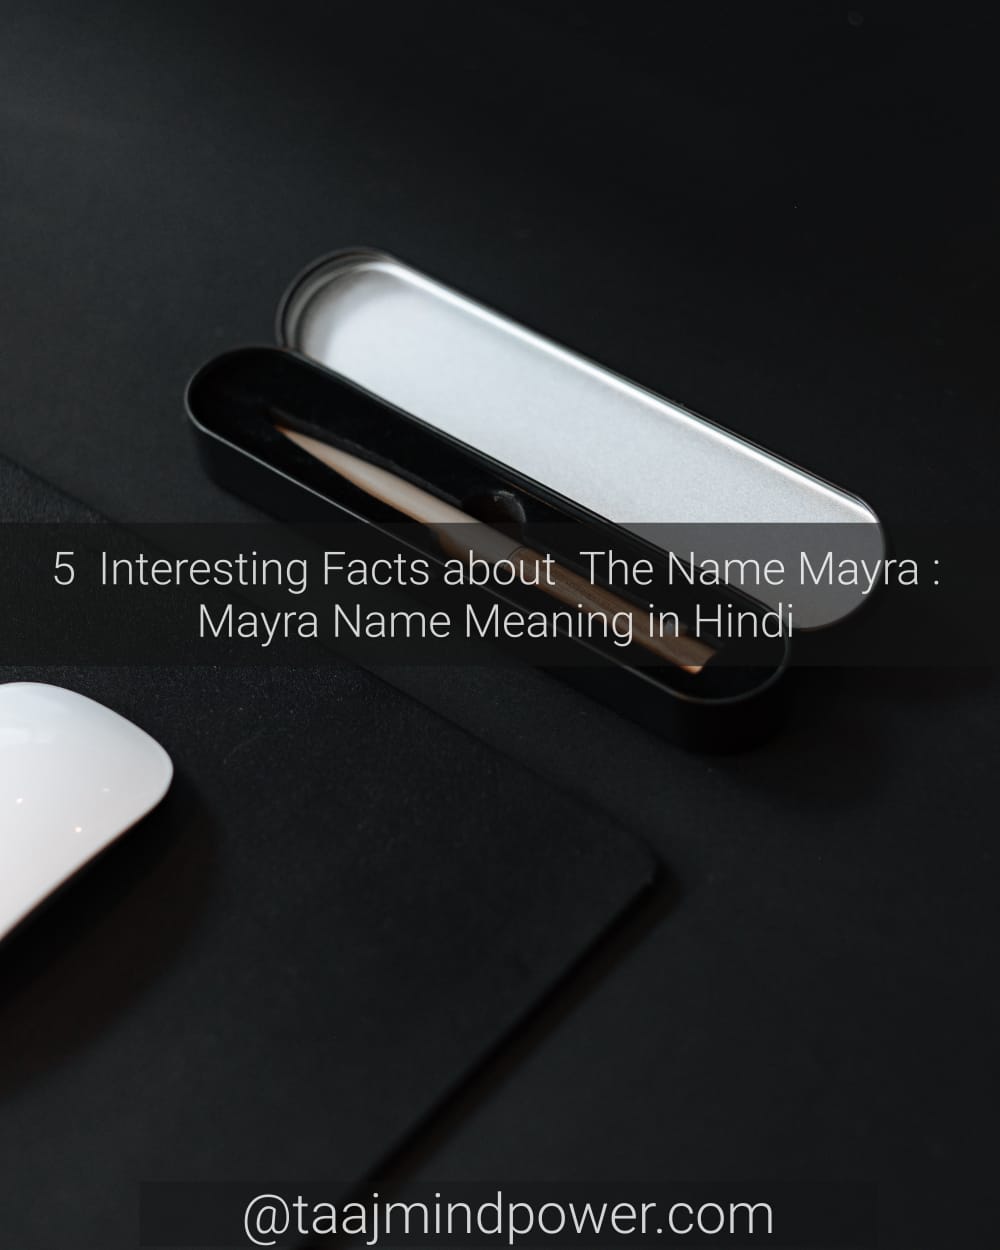 Mayra Name Meaning in Hindi